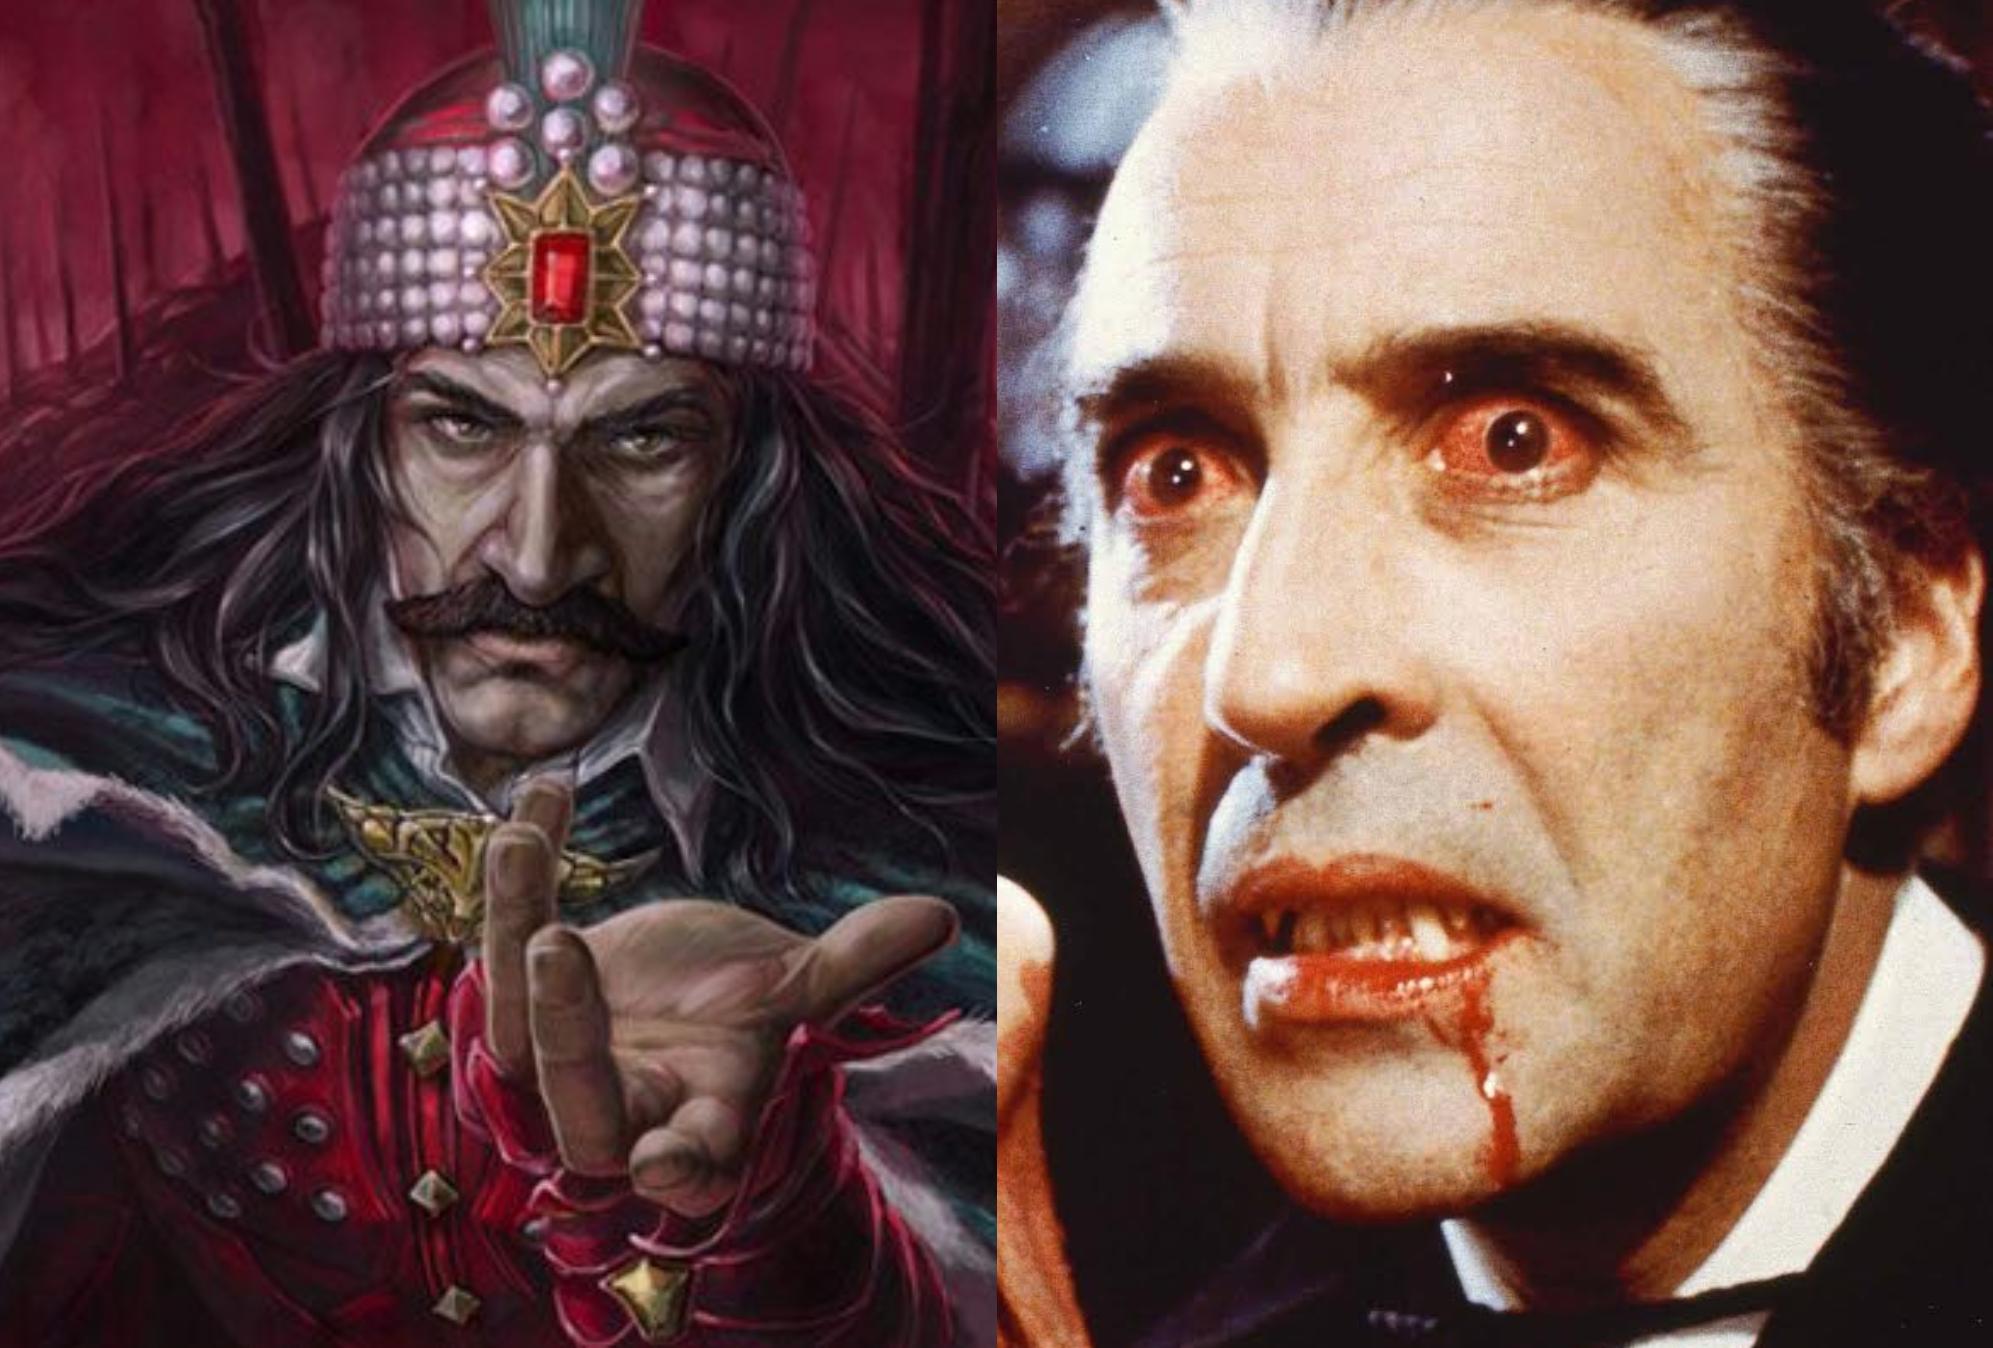 Βλάντ Τσέπες ή Dracula: Η αληθινή ιστορία του πρίγκιπα του σκότους Κόμη Δράκουλα – Που σταματά η αλήθεια και που αρχίζει ο μύθος;